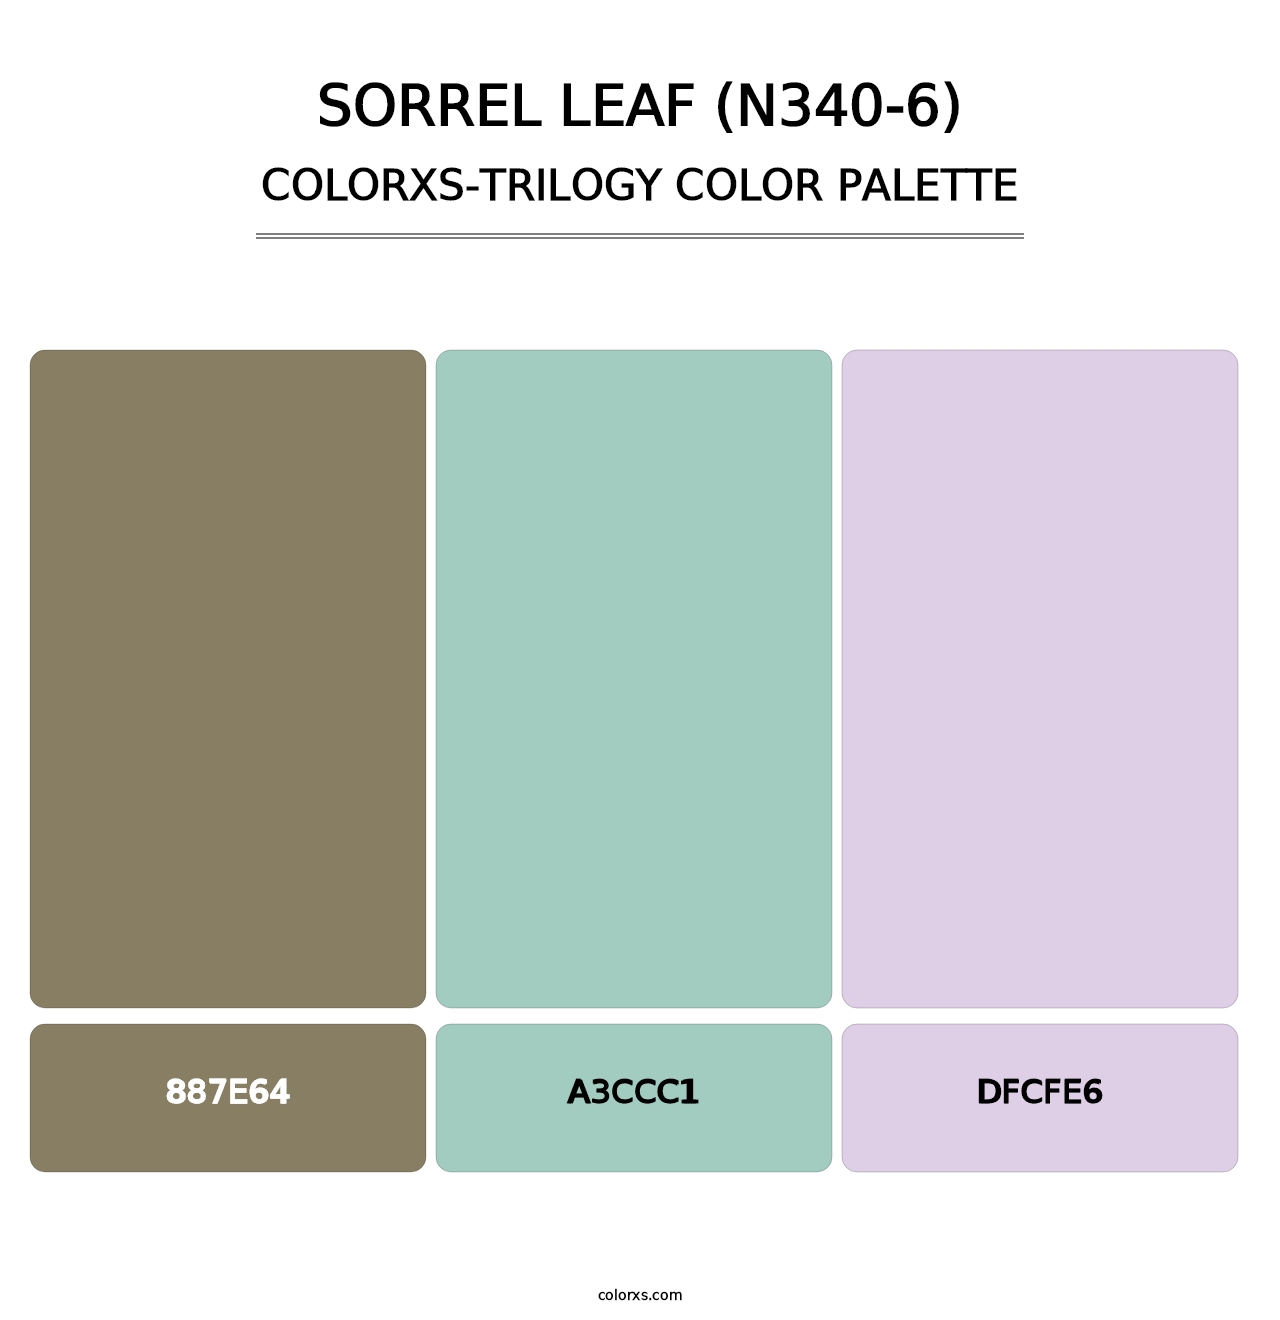 Sorrel Leaf (N340-6) - Colorxs Trilogy Palette